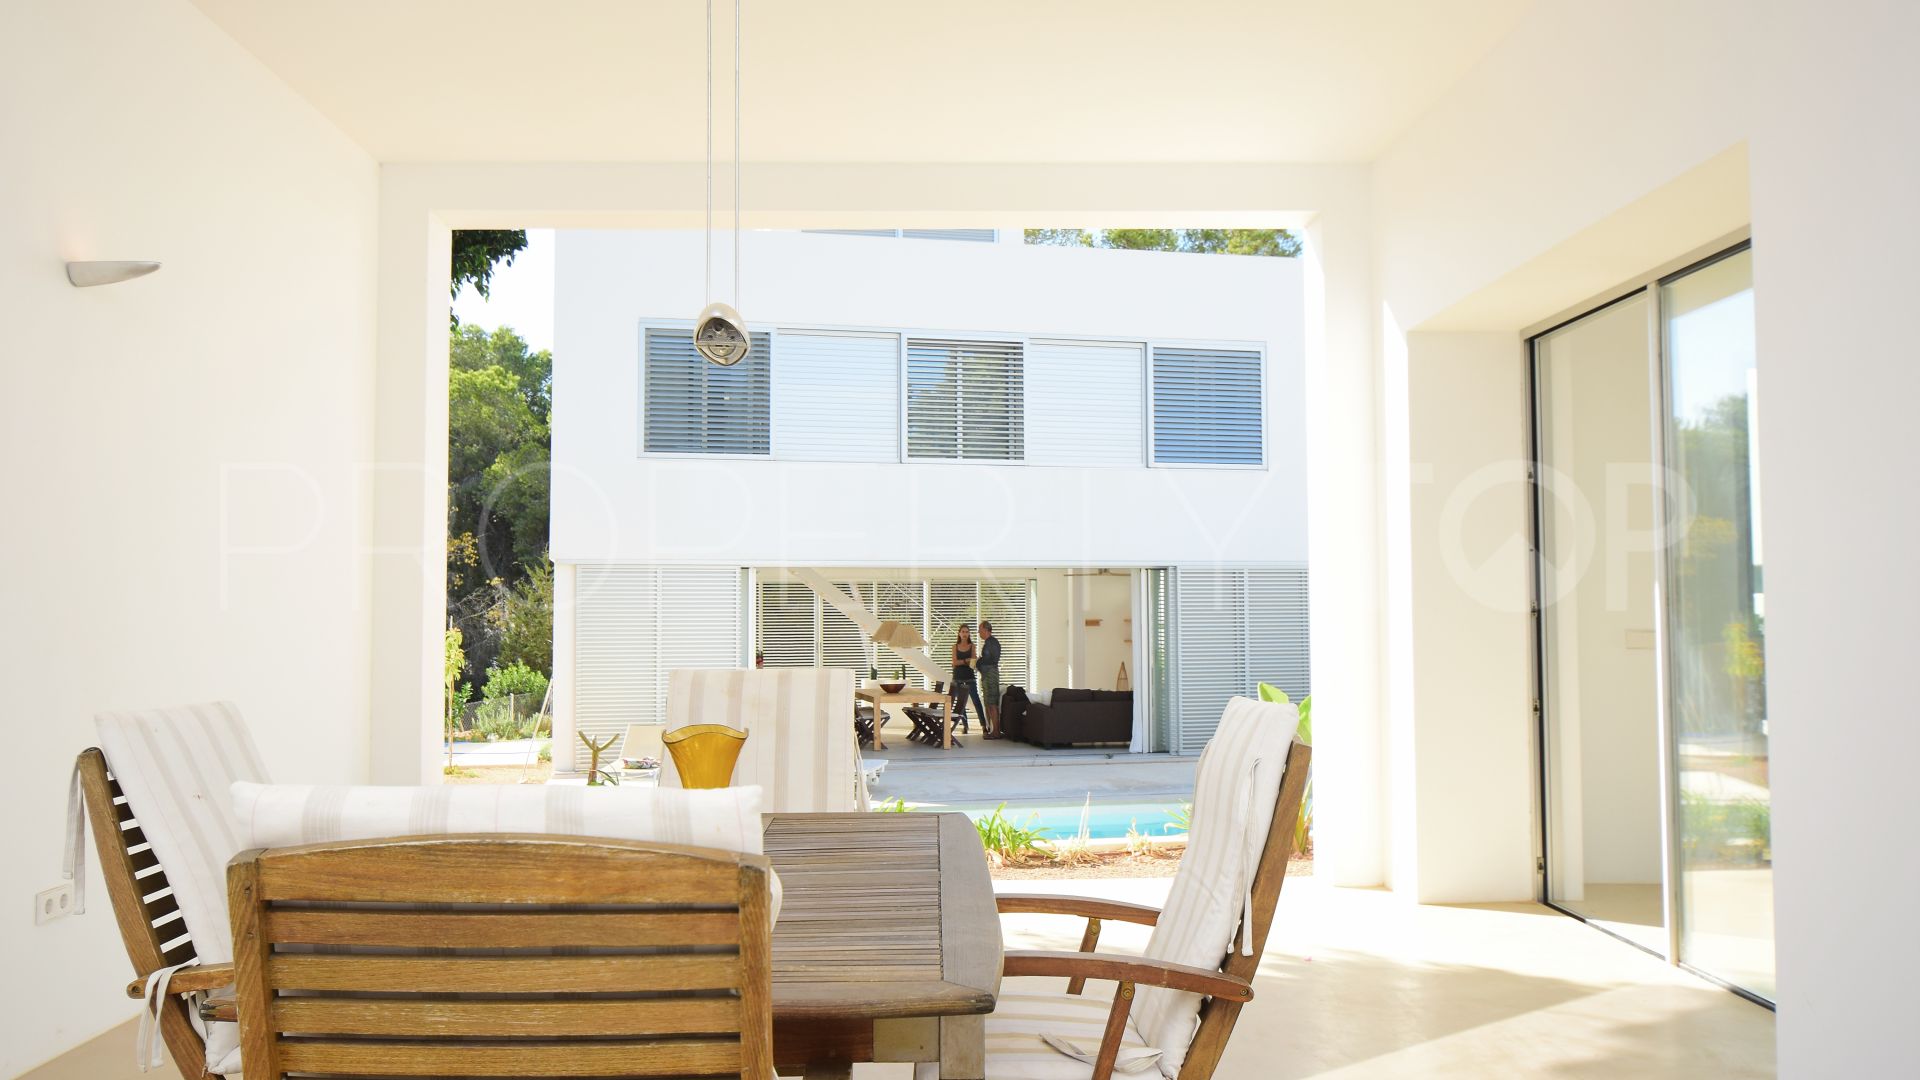 4 bedrooms villa for sale in San Carlos